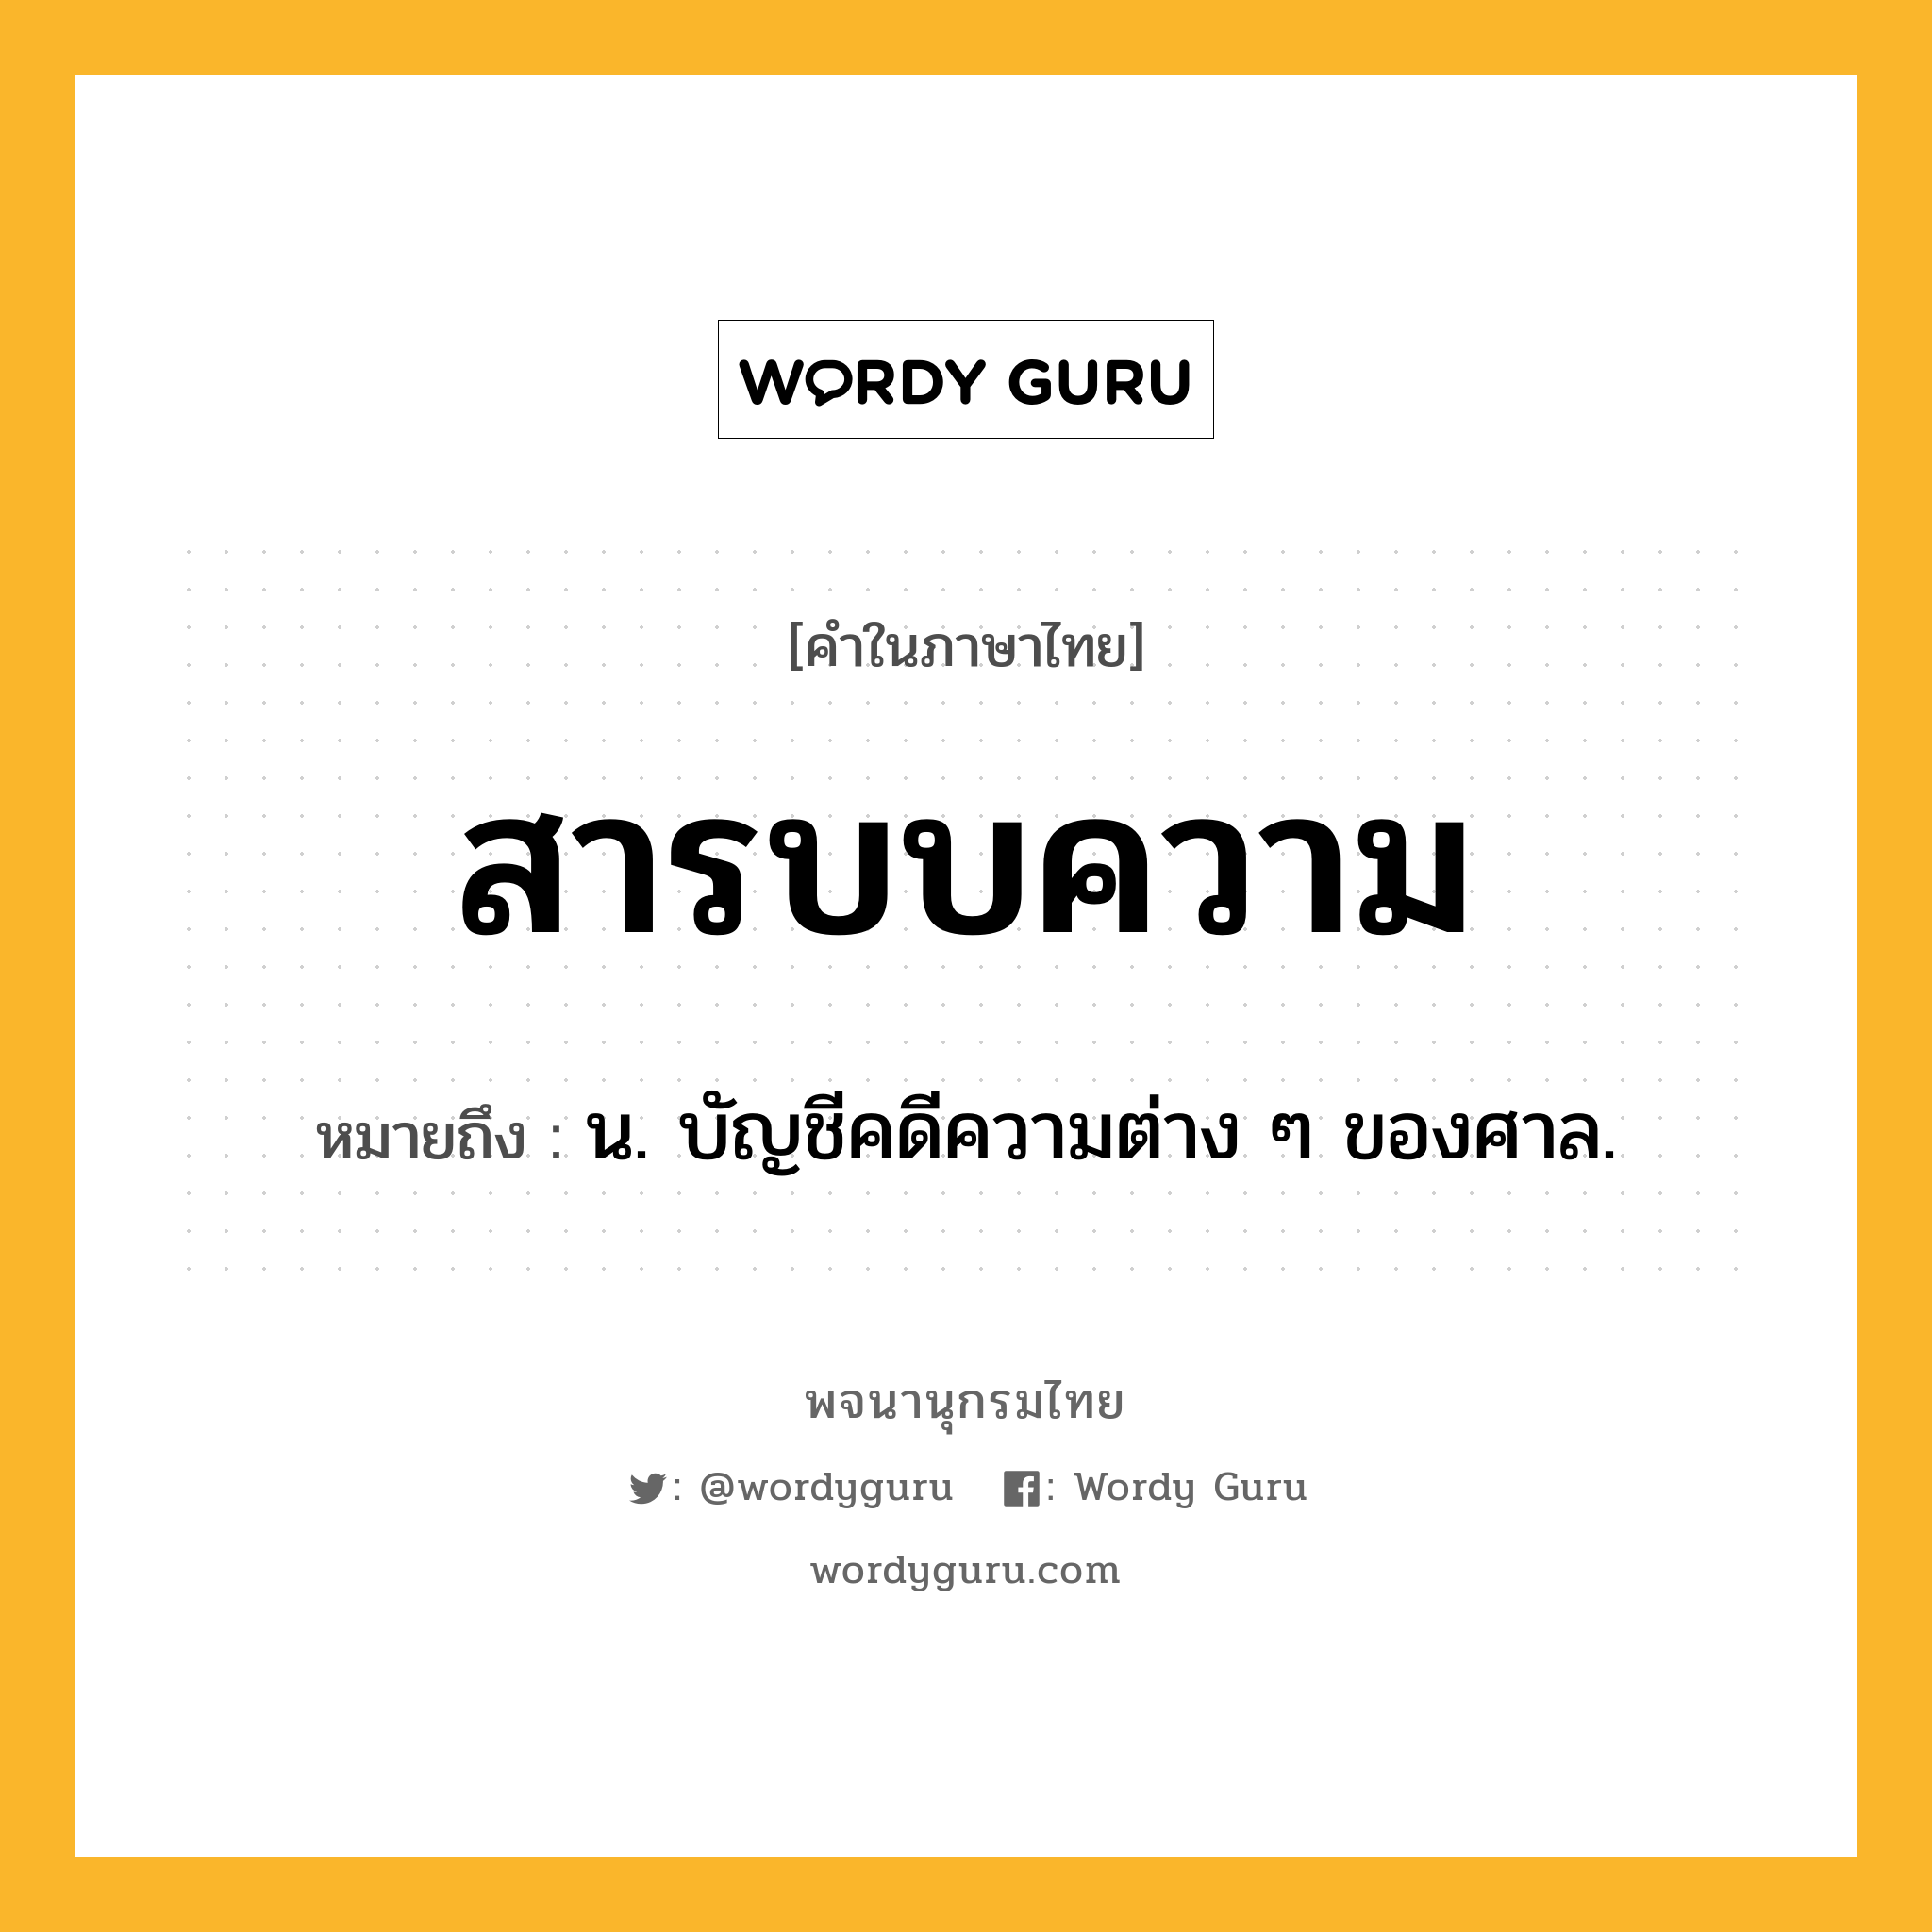 สารบบความ ความหมาย หมายถึงอะไร?, คำในภาษาไทย สารบบความ หมายถึง น. บัญชีคดีความต่าง ๆ ของศาล.